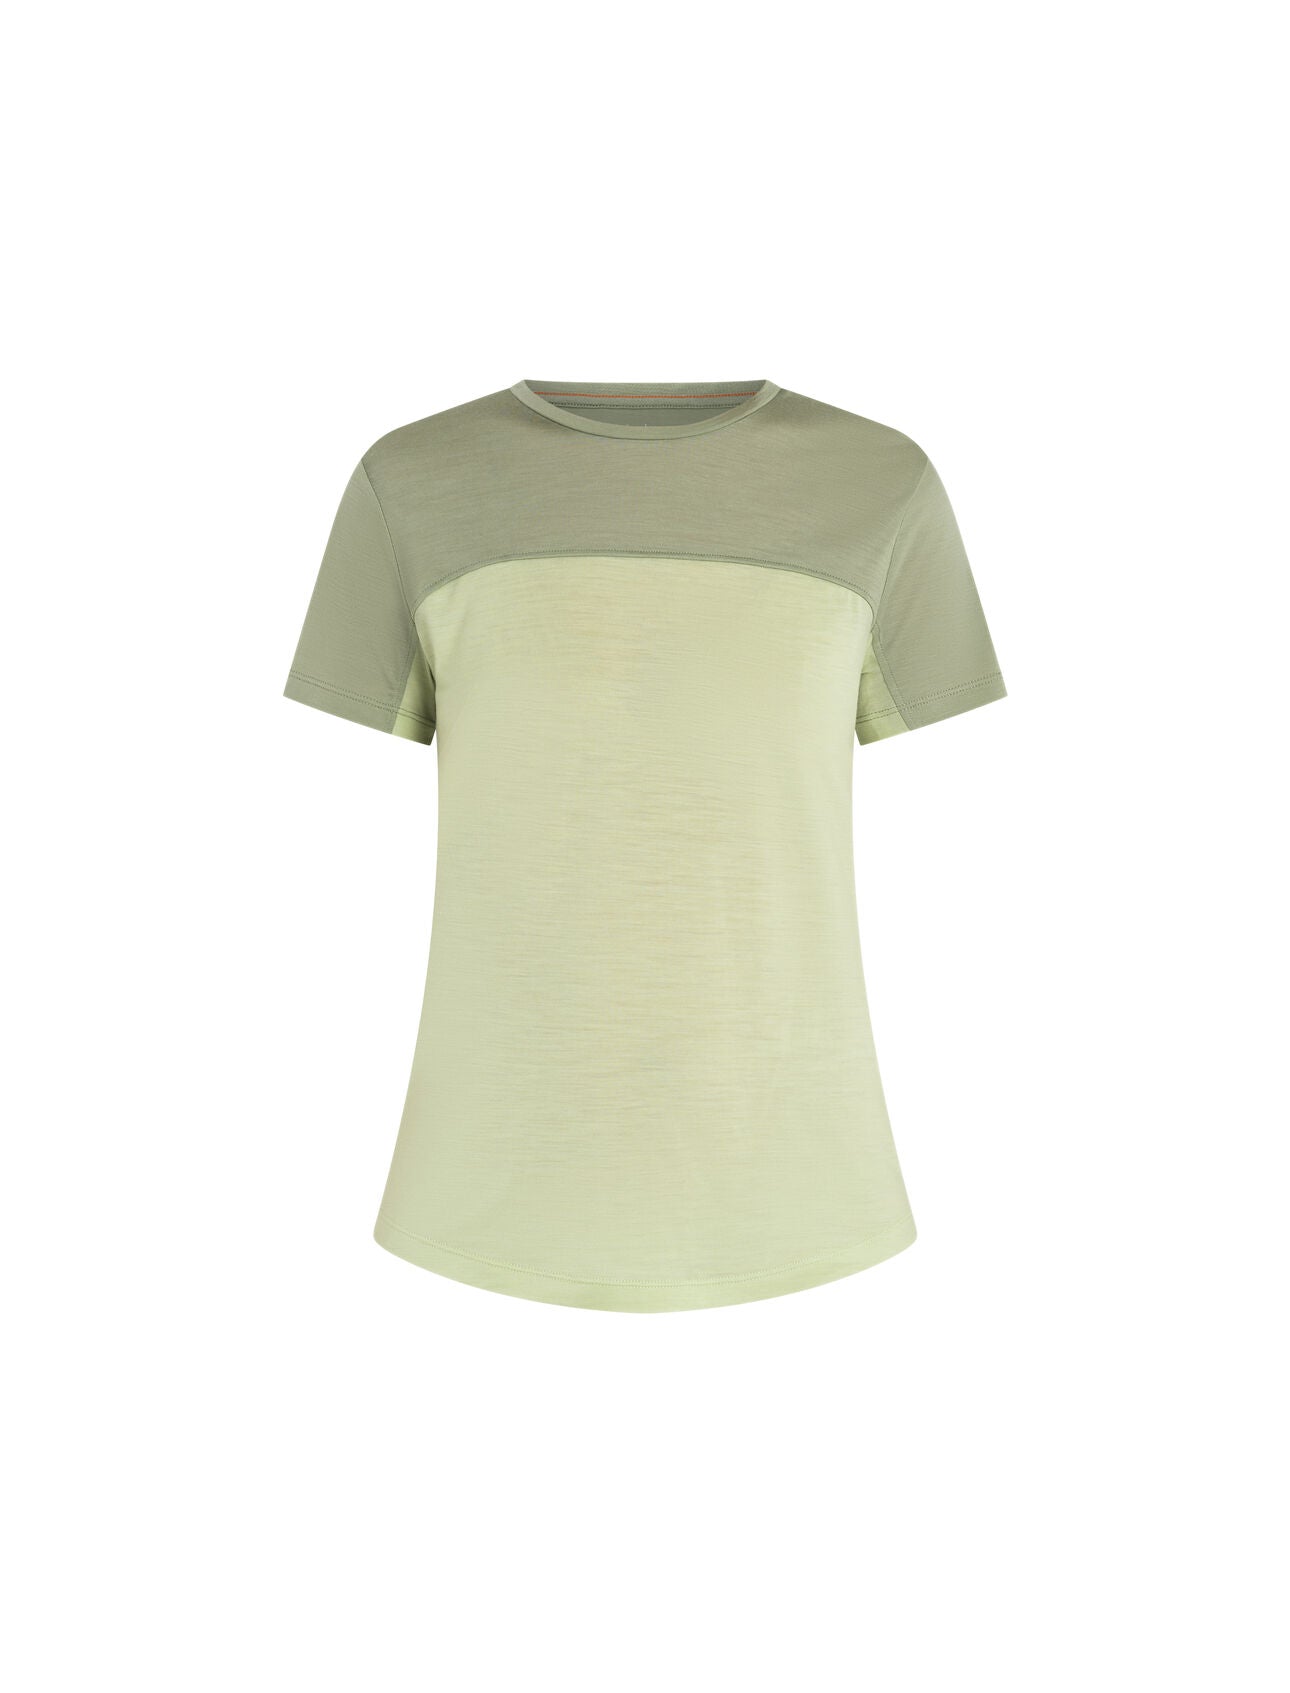 Icebreaker Women's Merino 125 Cool-Lite Sphere Short Sleeve Shirt